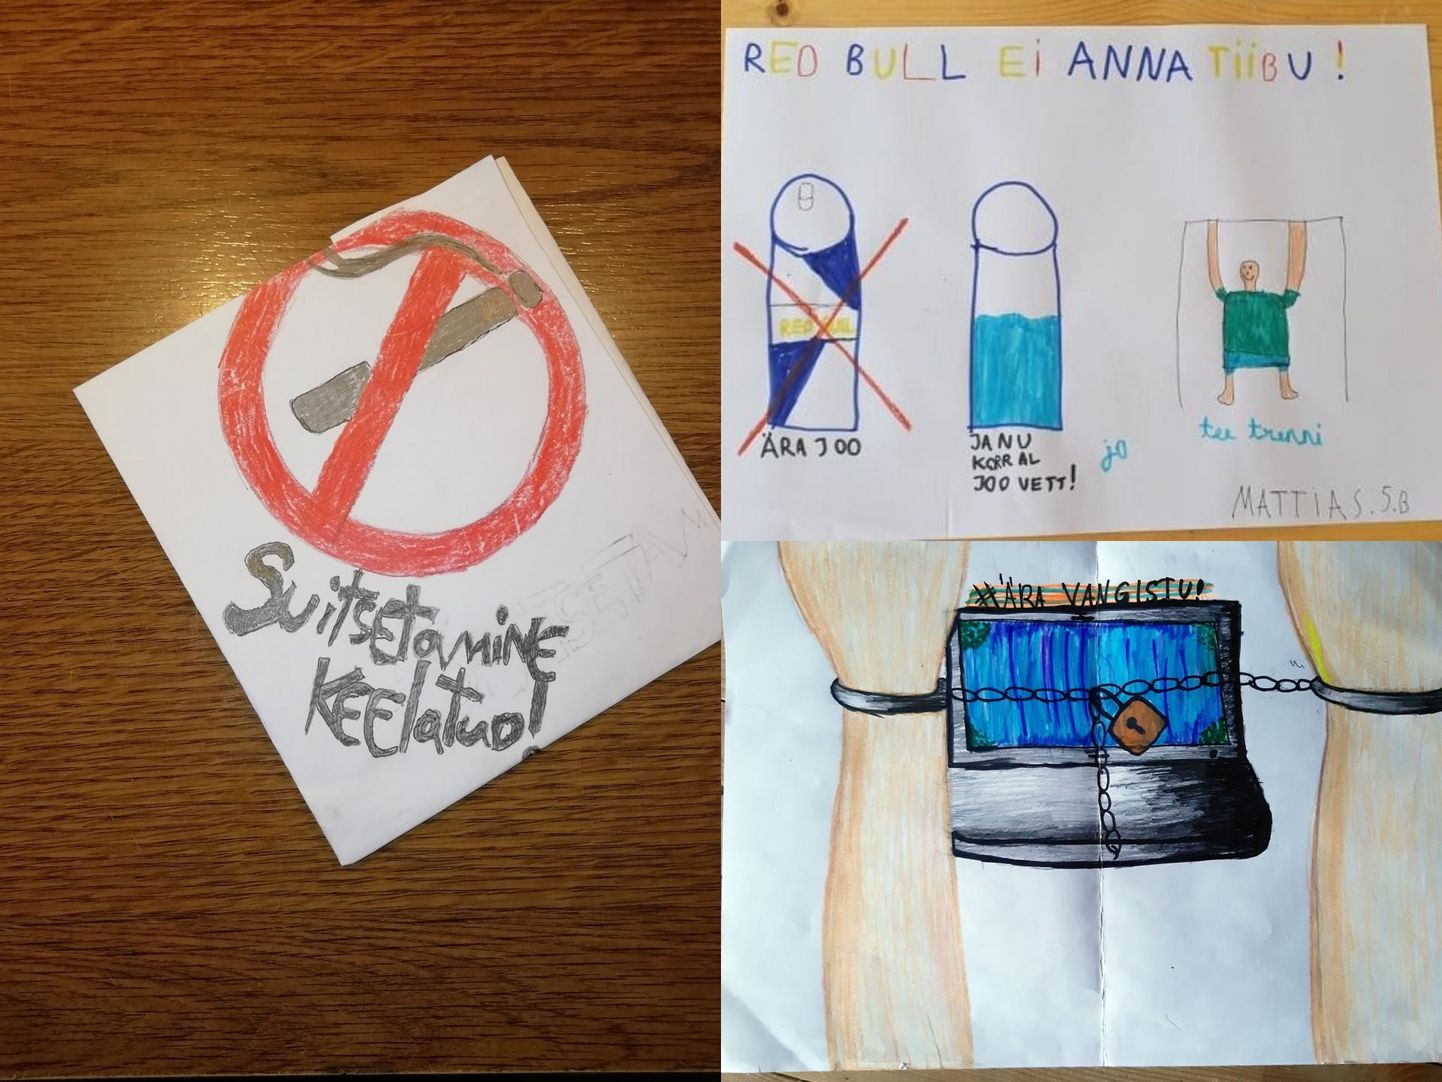 Viienda klassi õpilased said koduülesandeks sotsiaalse sõnumiga plakatite joonistamise ja arvutist eemal olemise.